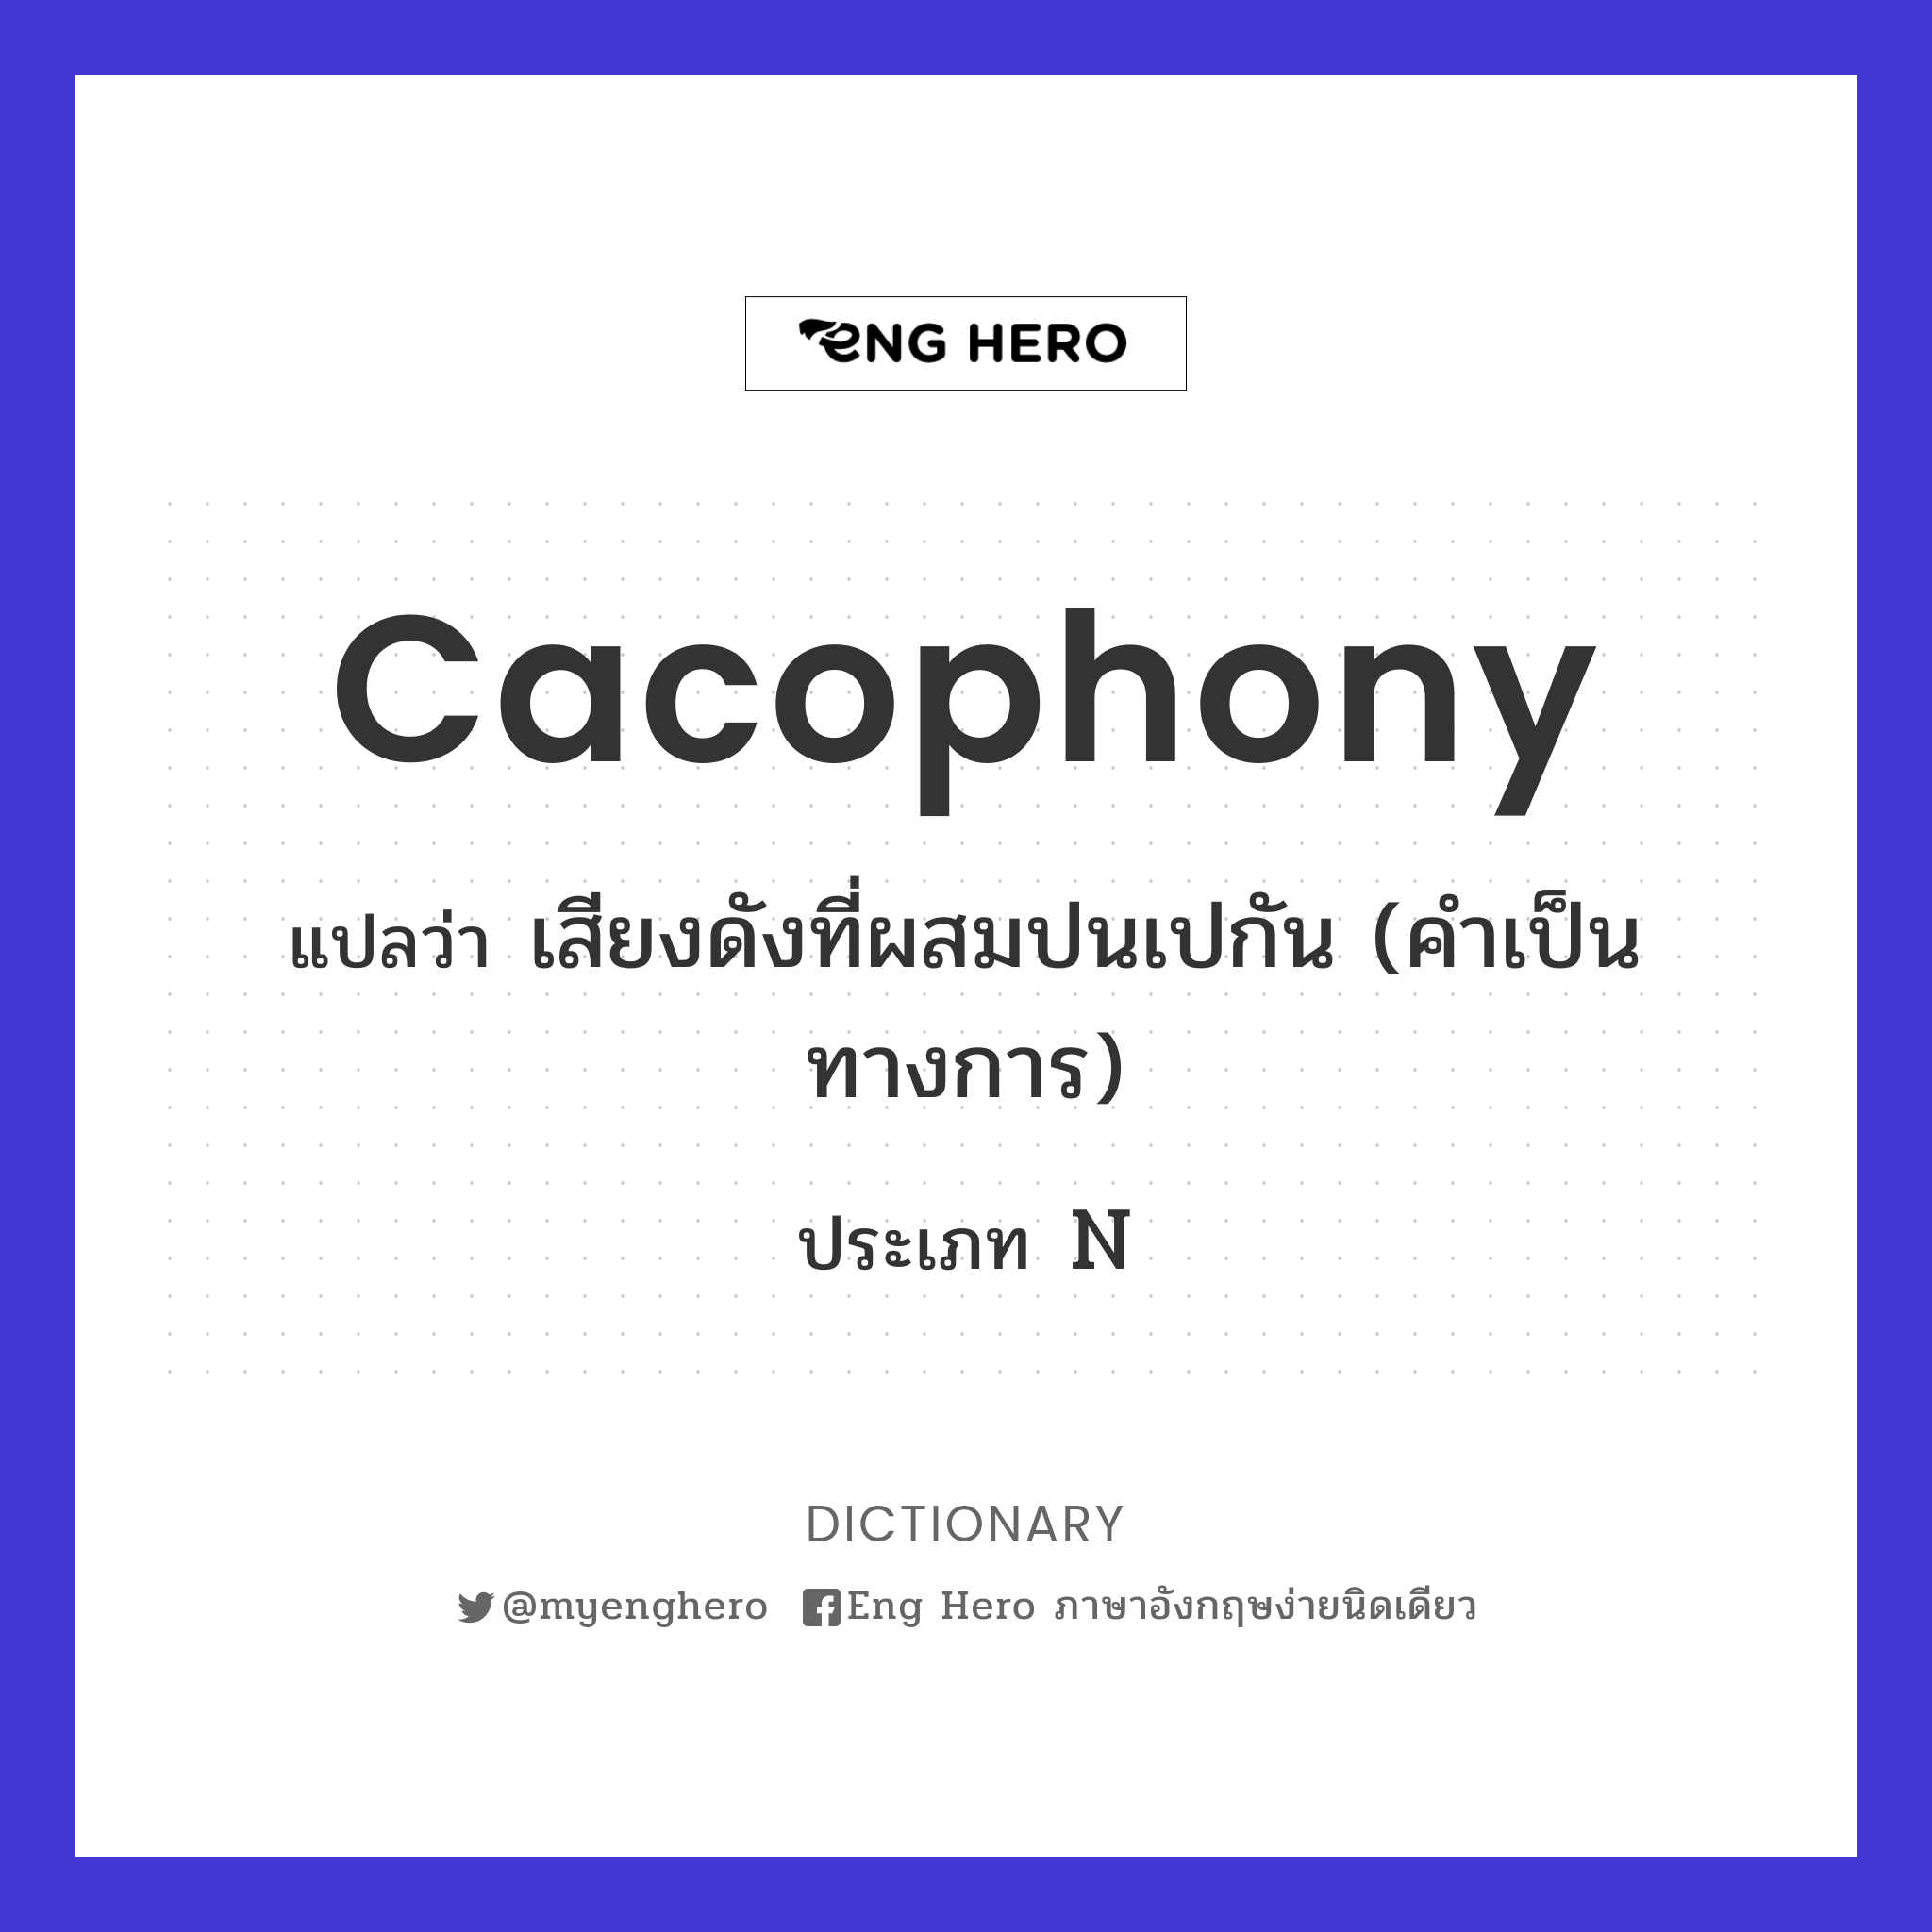 cacophony